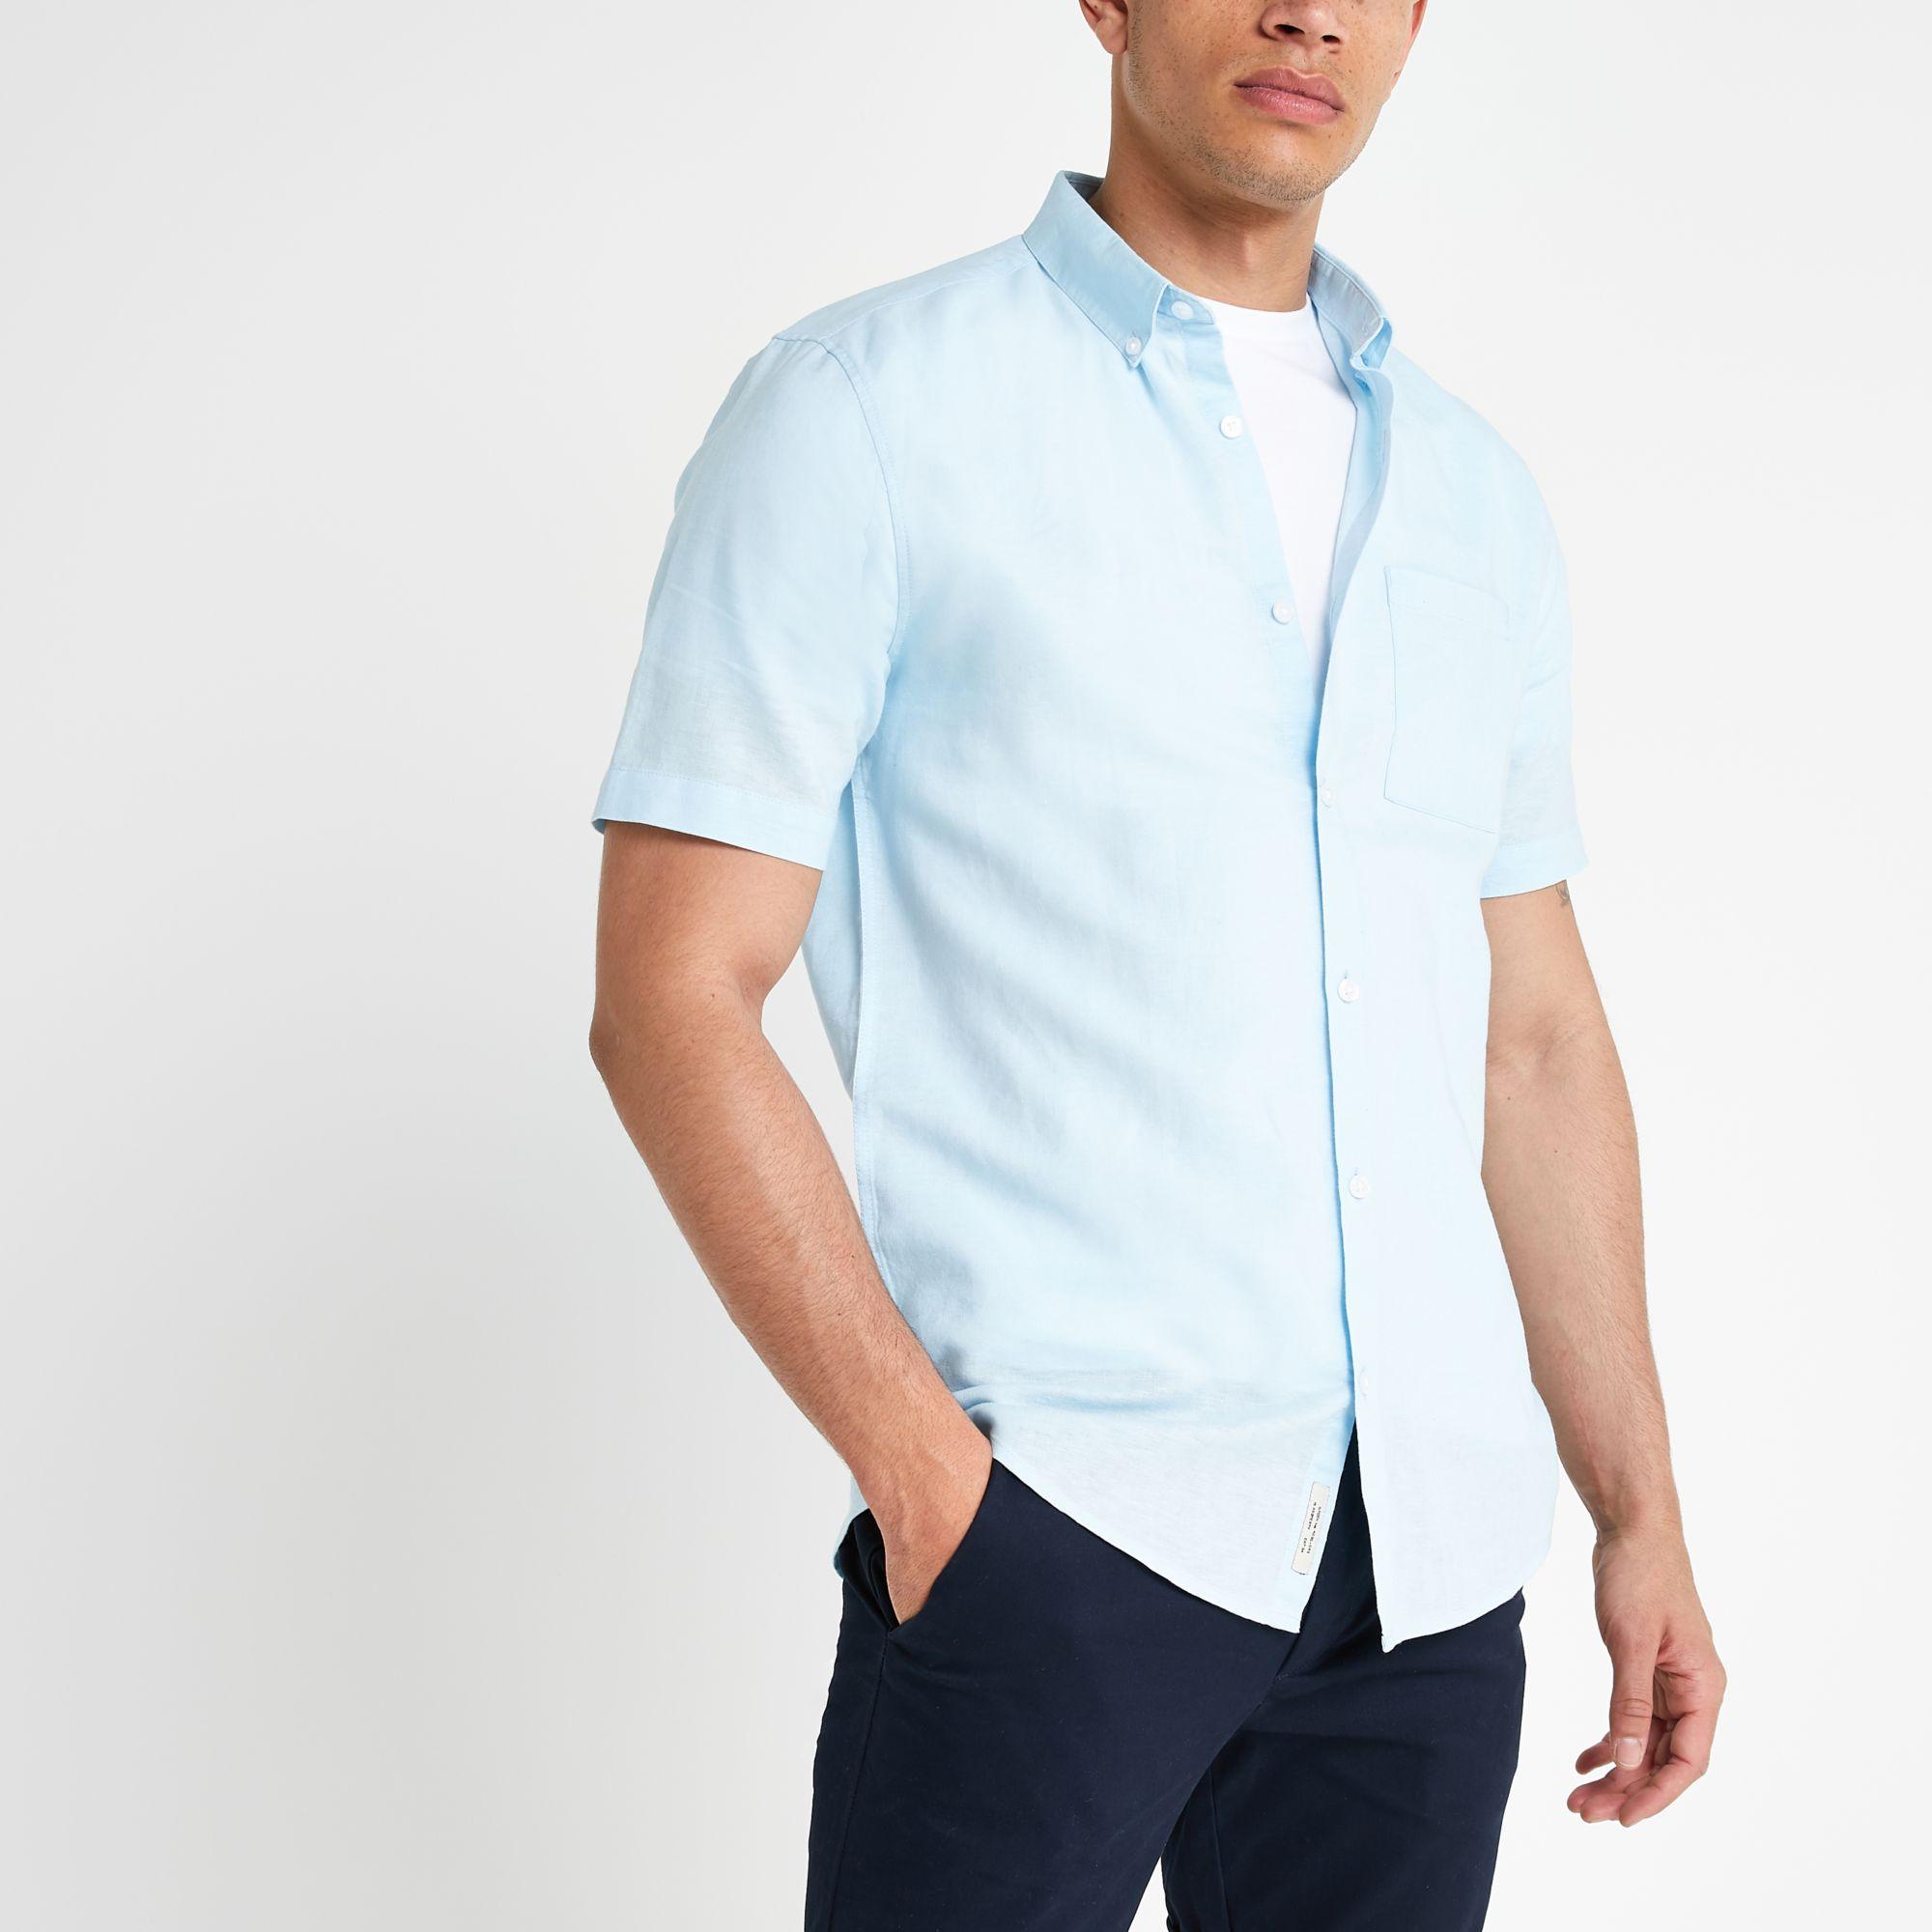 River Island Light Linen Short Sleeve Shirt in Blue for Men - Lyst